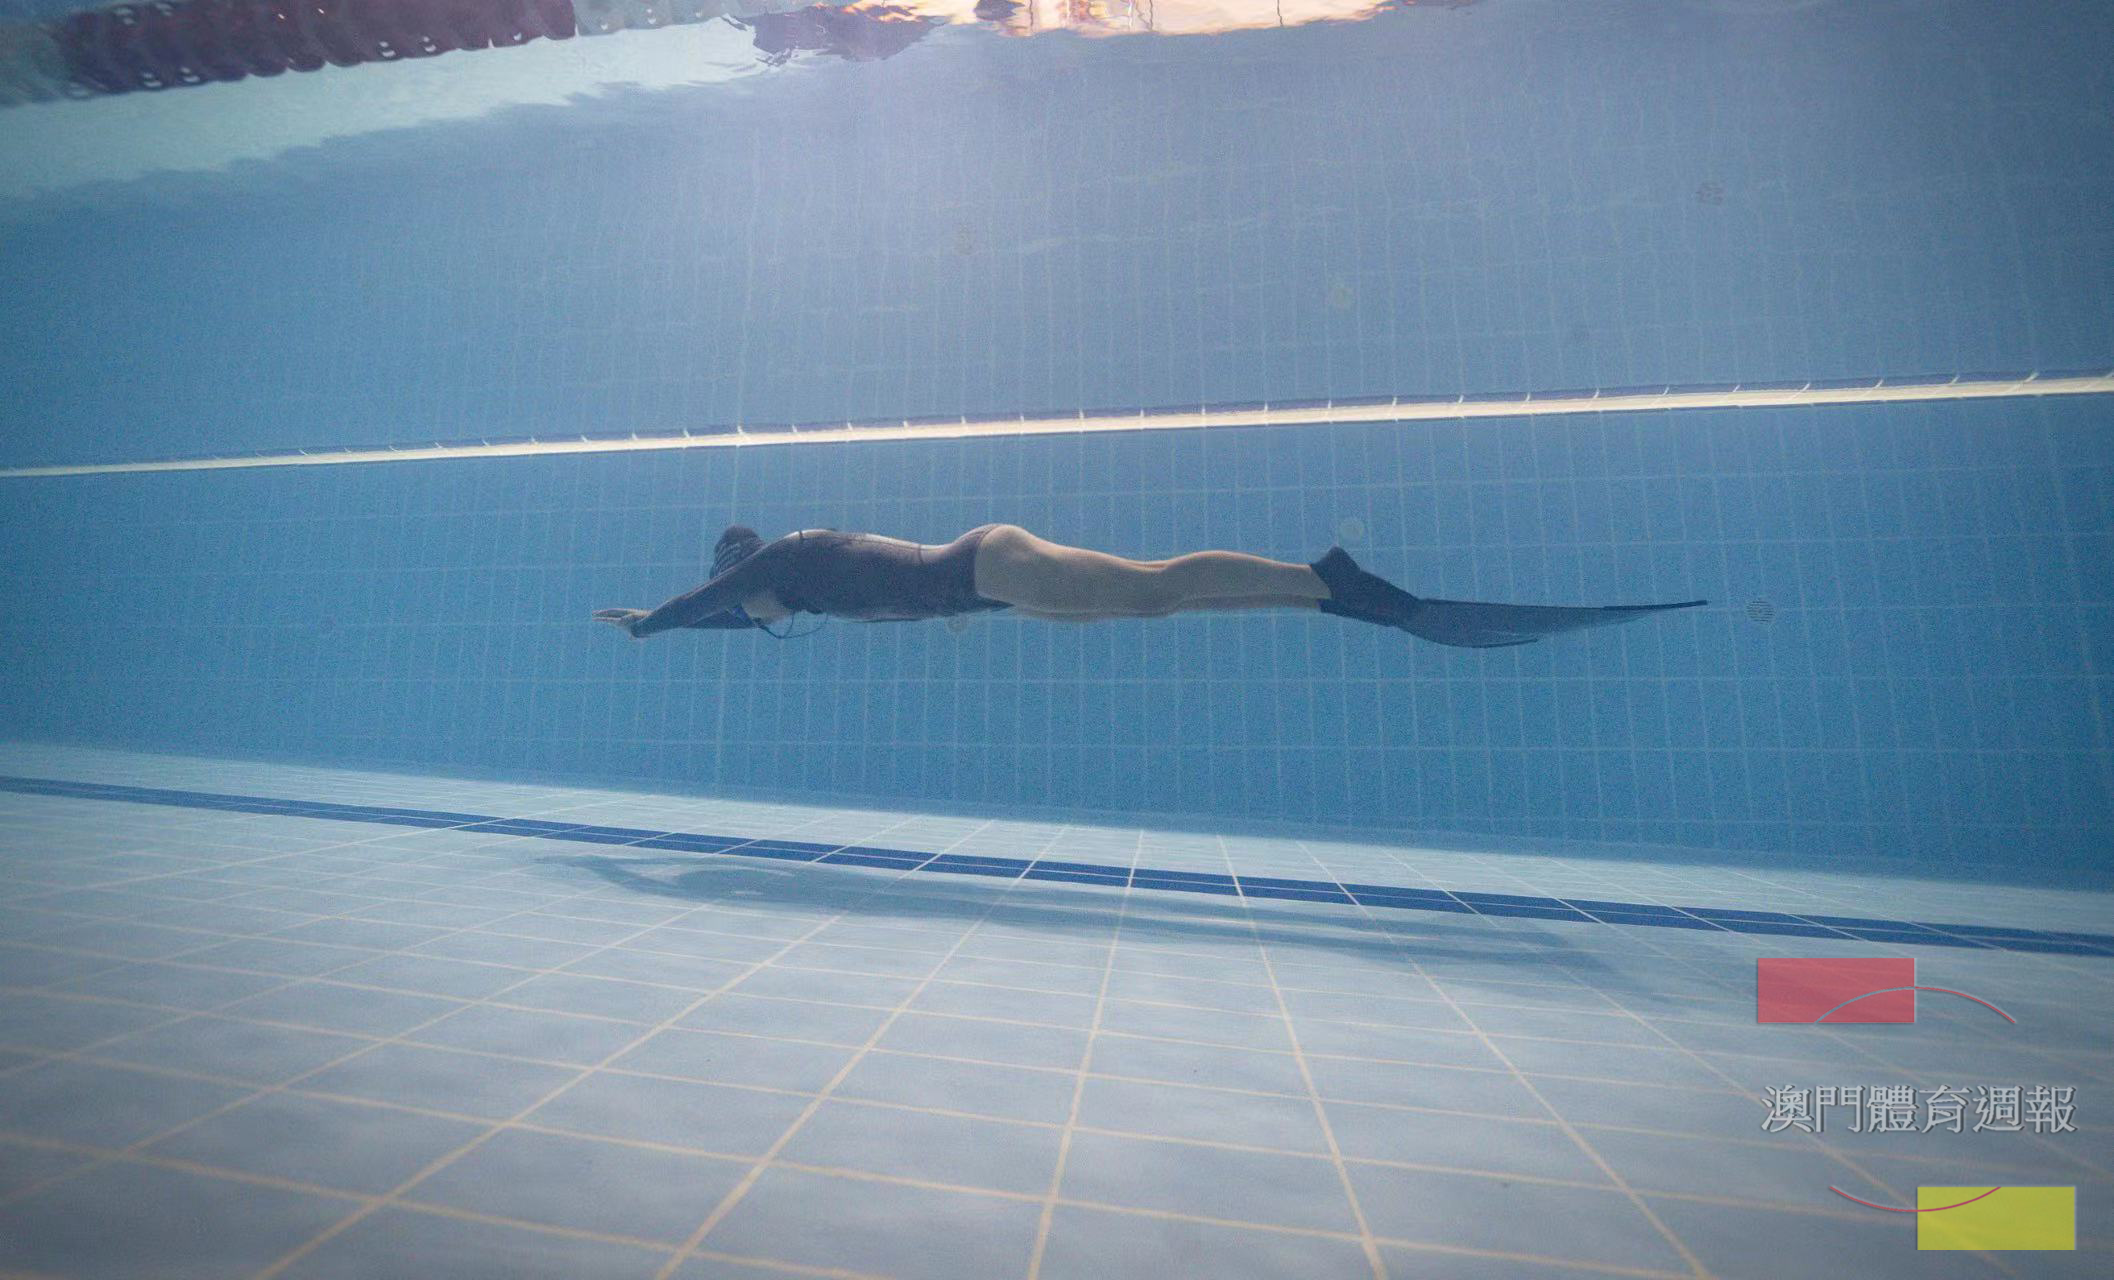 4 16歲本澳女子運動員李悠嘉在進行動態單蹼比賽中..jpg